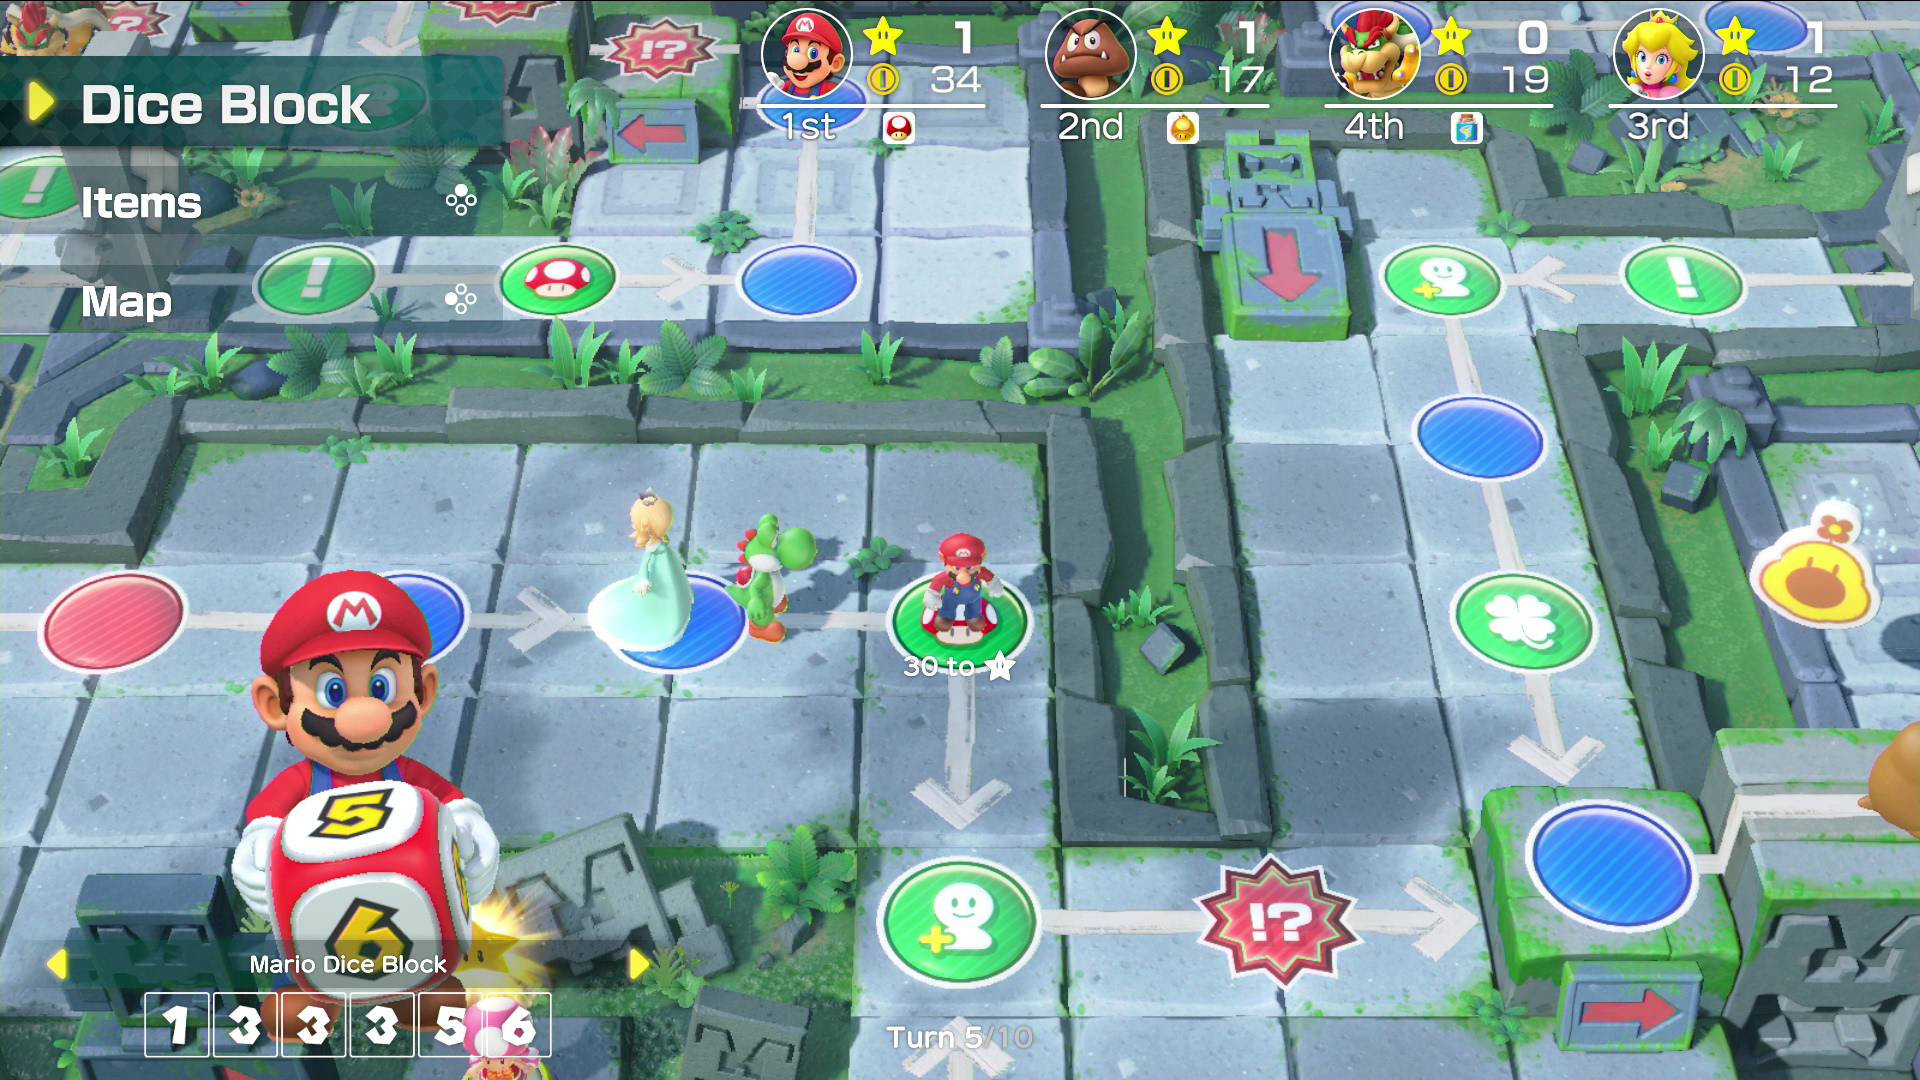 Super Mario Party screencap (Nintendo America)